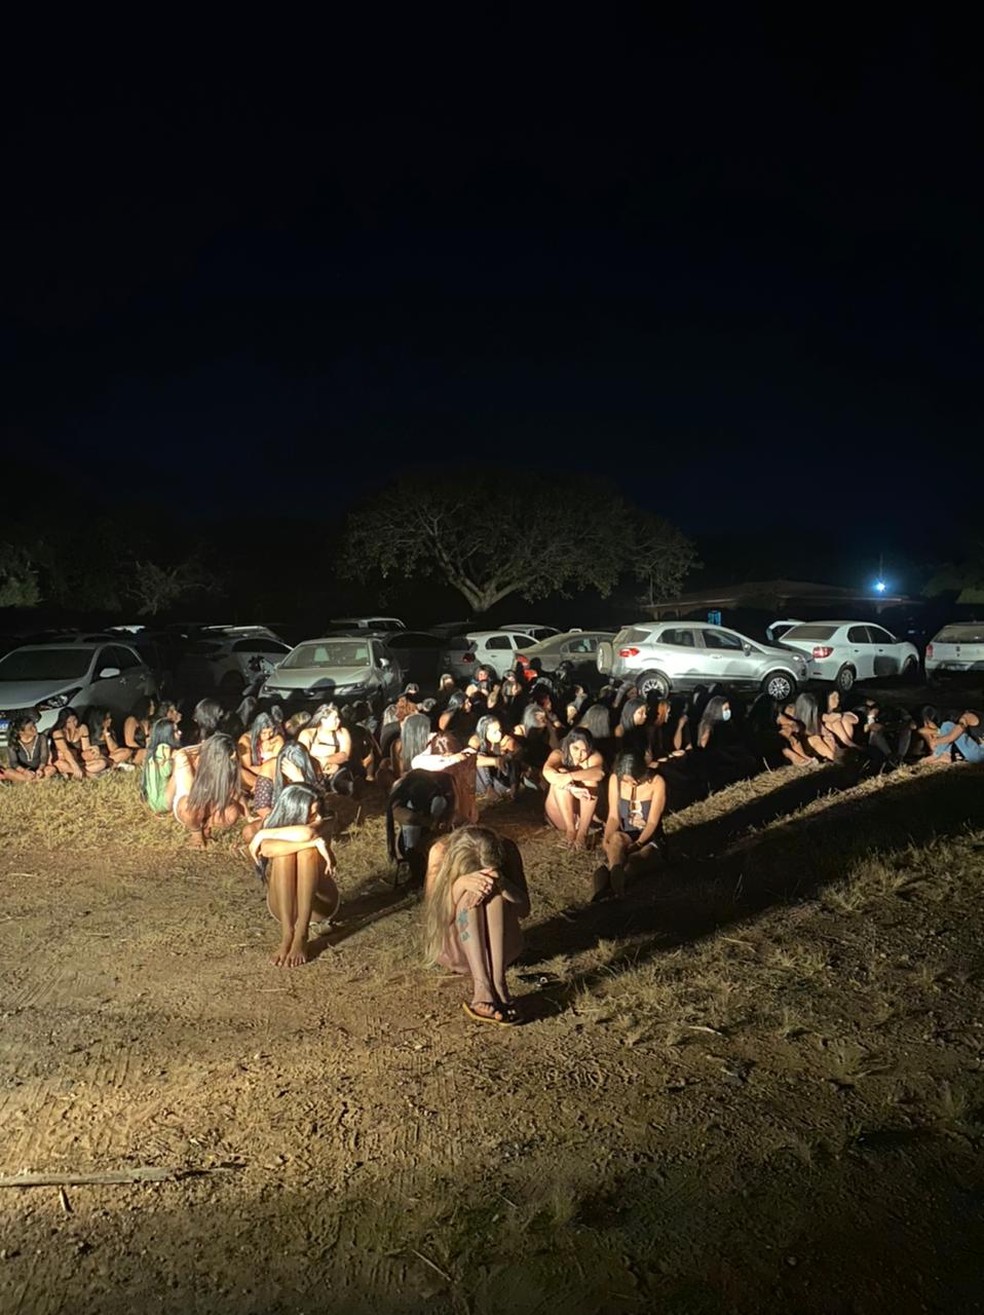 Festa clandestina com aglomeração de 160 pessoas em uma chácara, em Várzea Grande, região metropolitana de Cuiabá, foi fechada por policiais  — Foto: PMMT